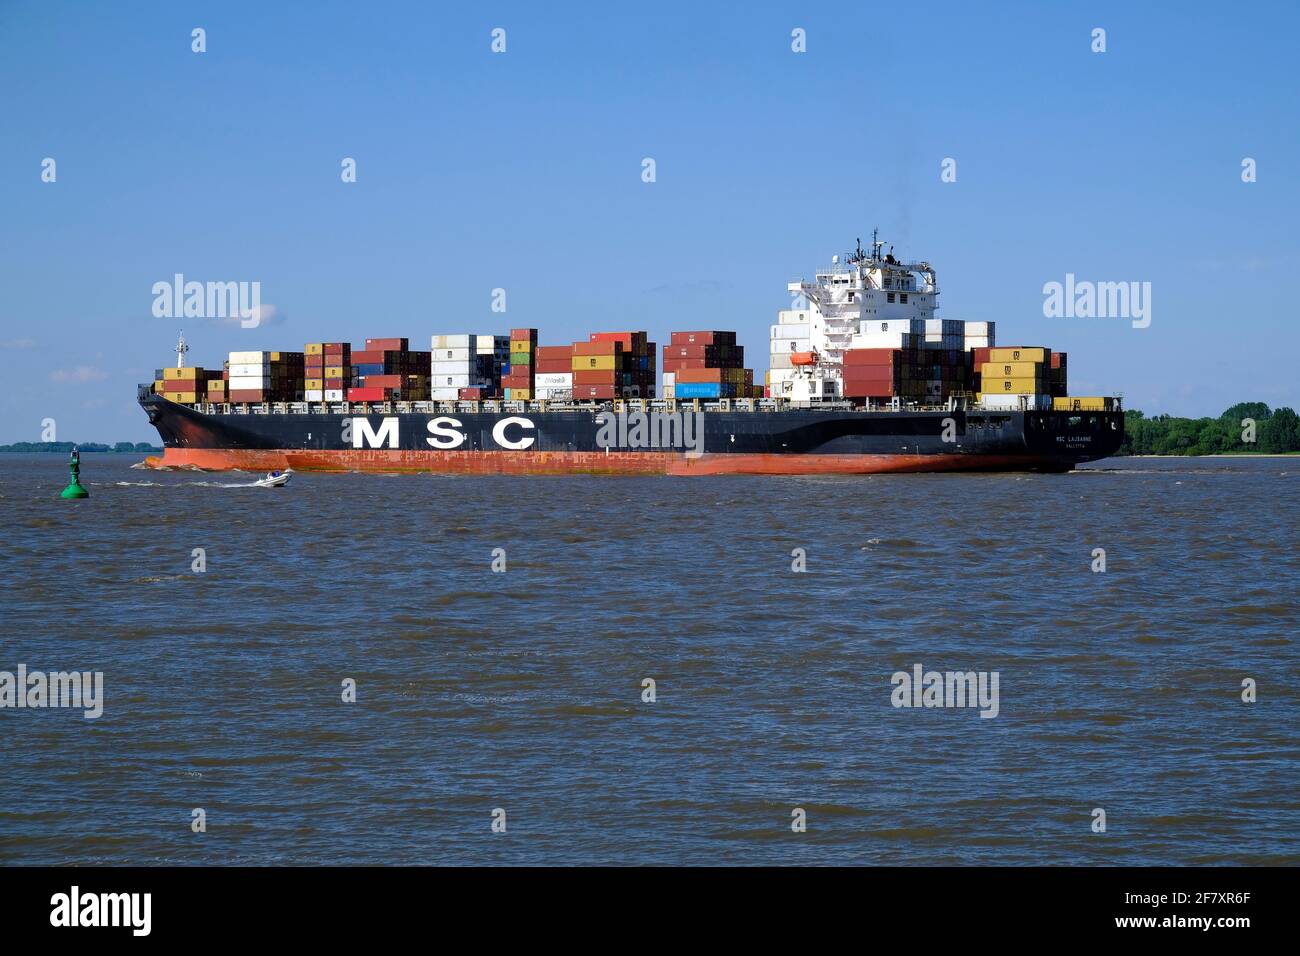 Europa, Deutschland, Niedersachsen, Stade, 07.06.2019: Containerschiff auf der Unterelbe bei Stade Foto Stock